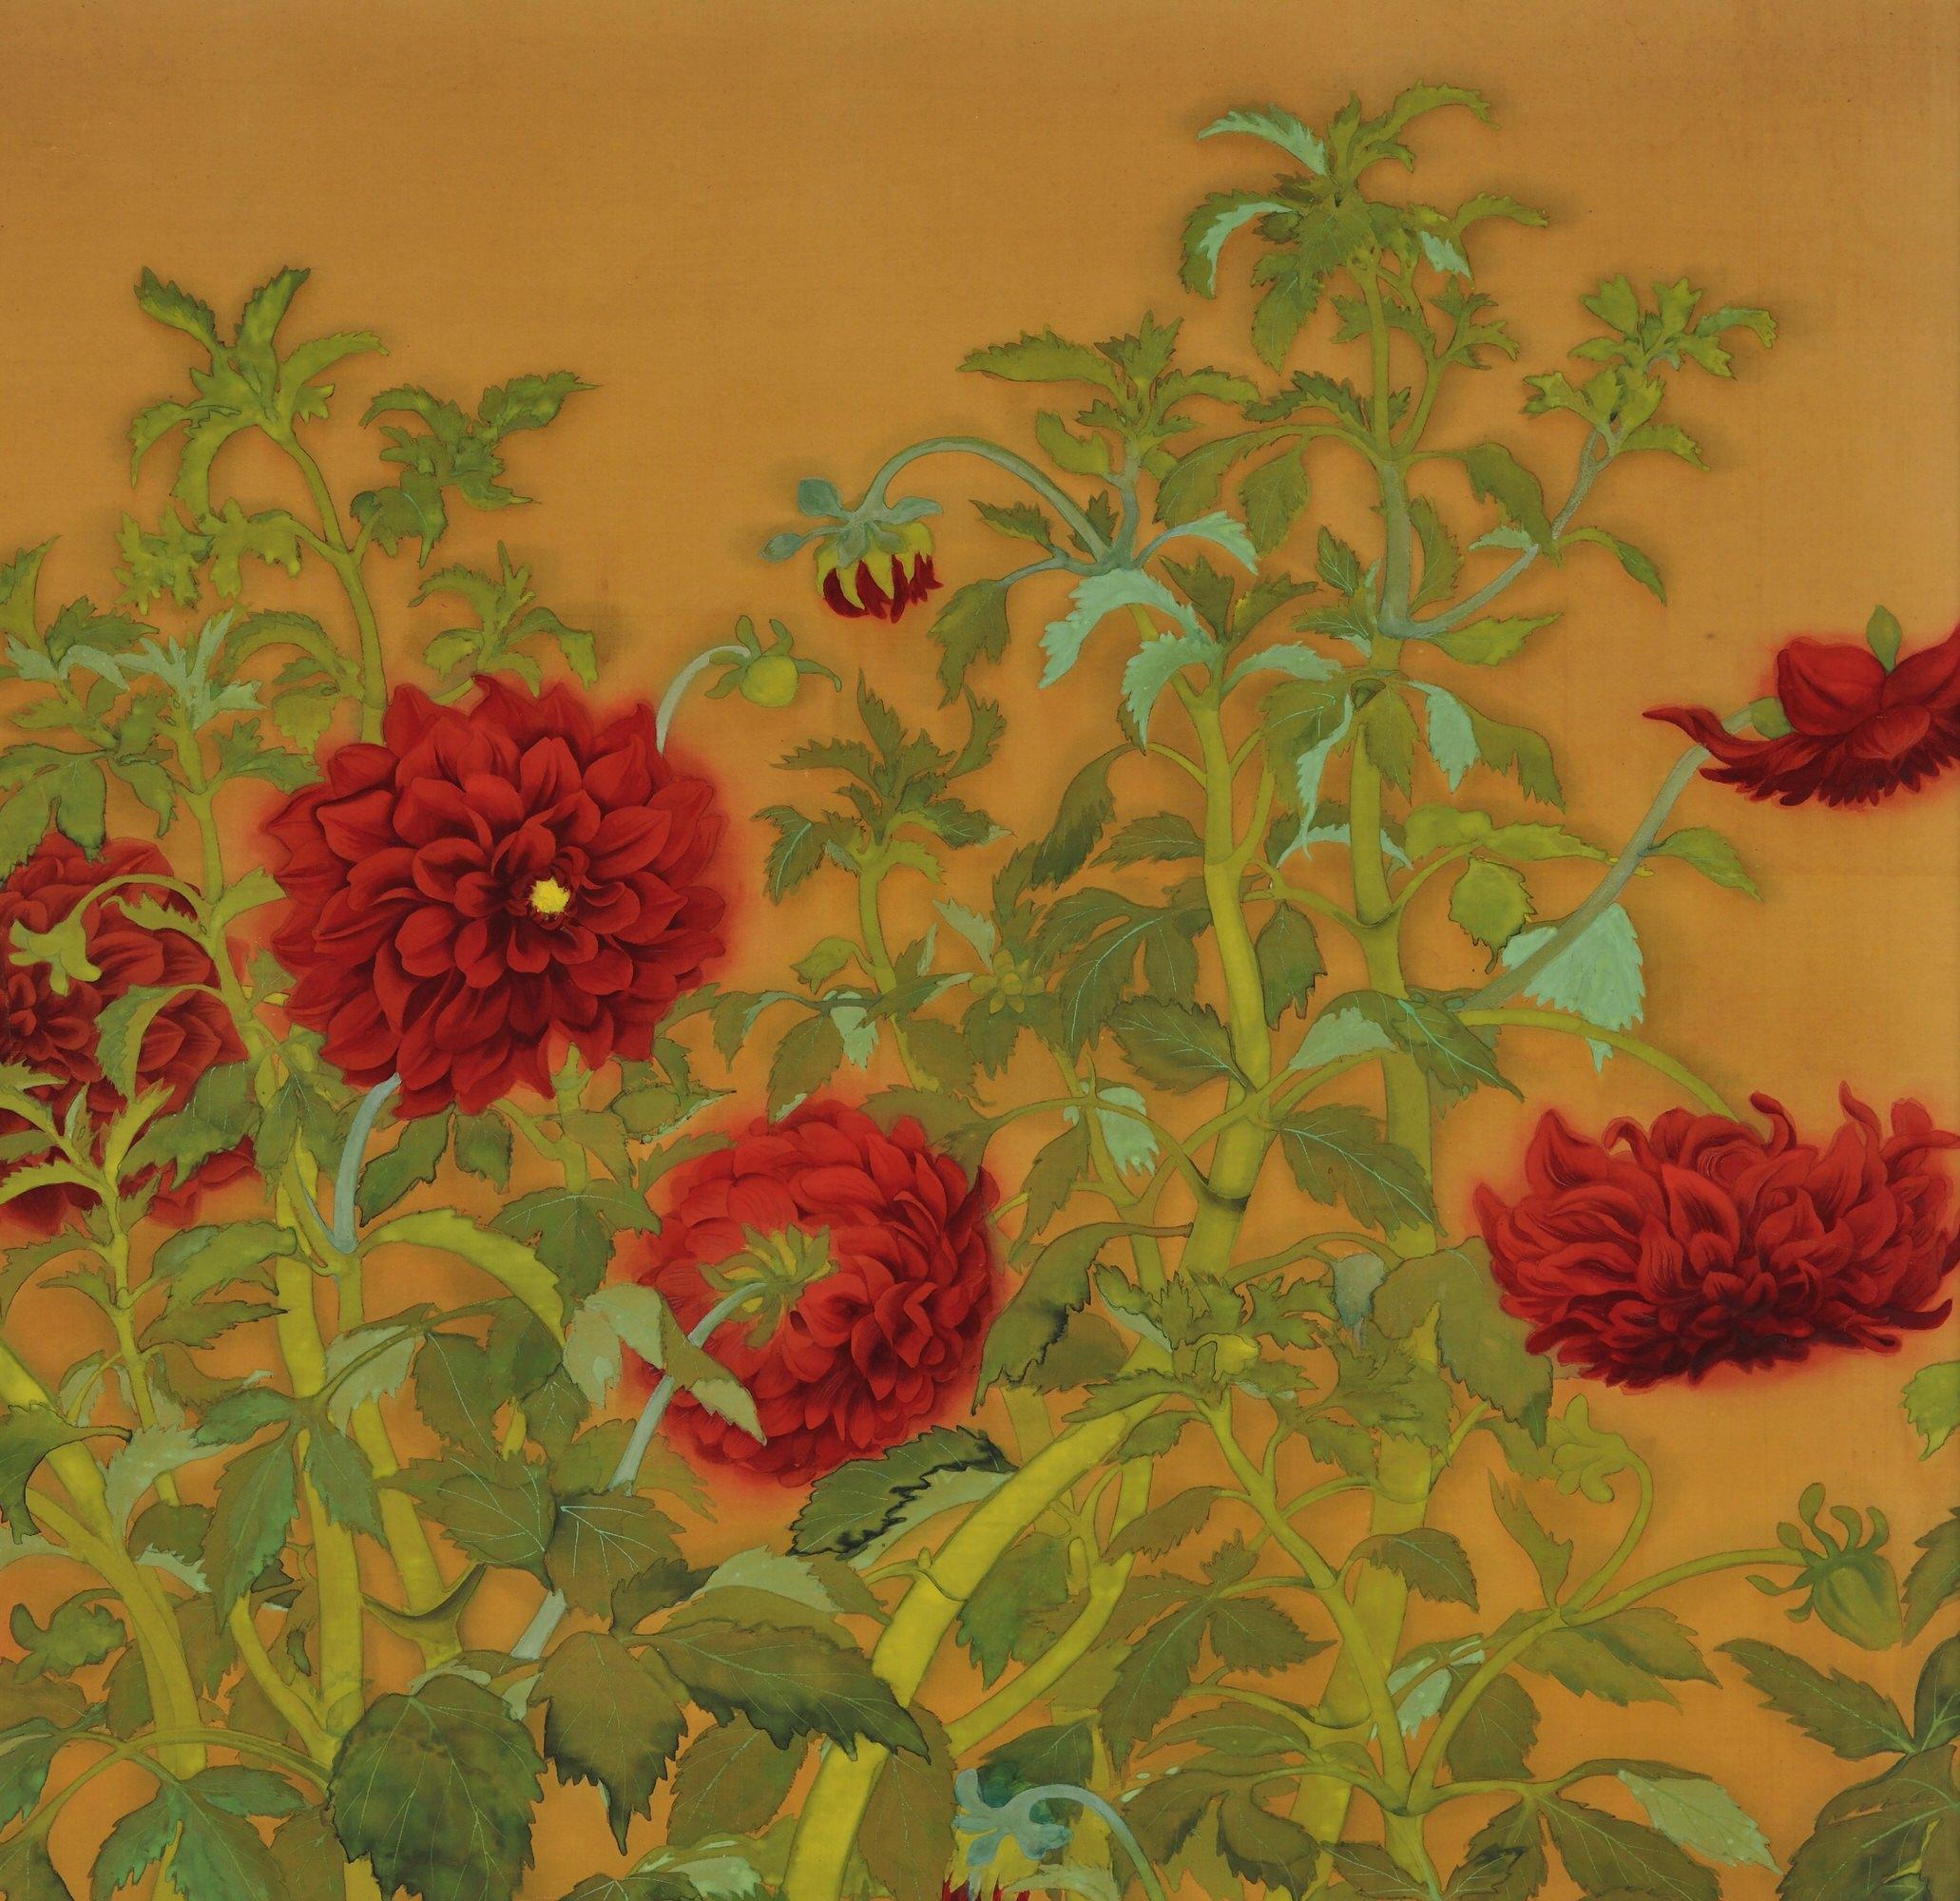 Tanaka Tessen (né en 1890)

Dahlias et coqs

Période Taisho, vers 1920

Peinture encadrée. Pigments minéraux et encre sur soie.

Dimensions (encadré) :

H. 159 cm x L. 97 cm x P. 2,5 cm (62,5